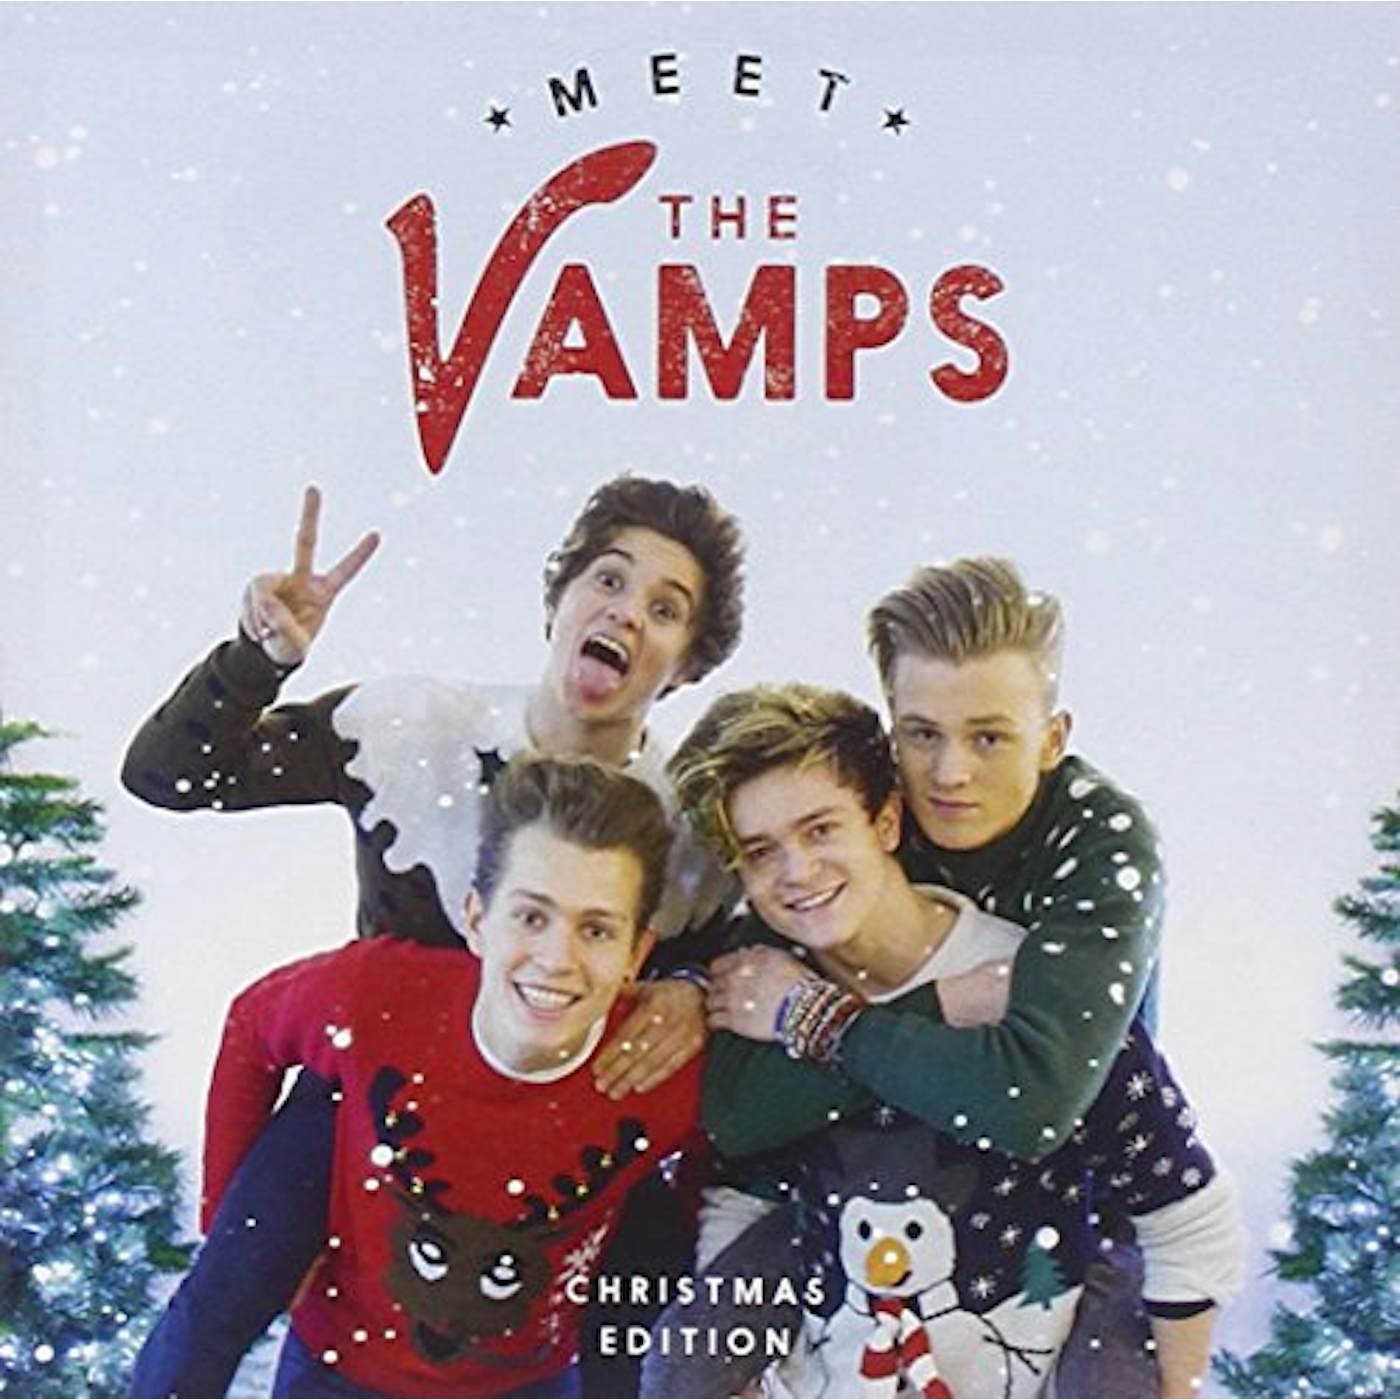 MEET THE VAMPS: CHRISTMAS EDITION CD